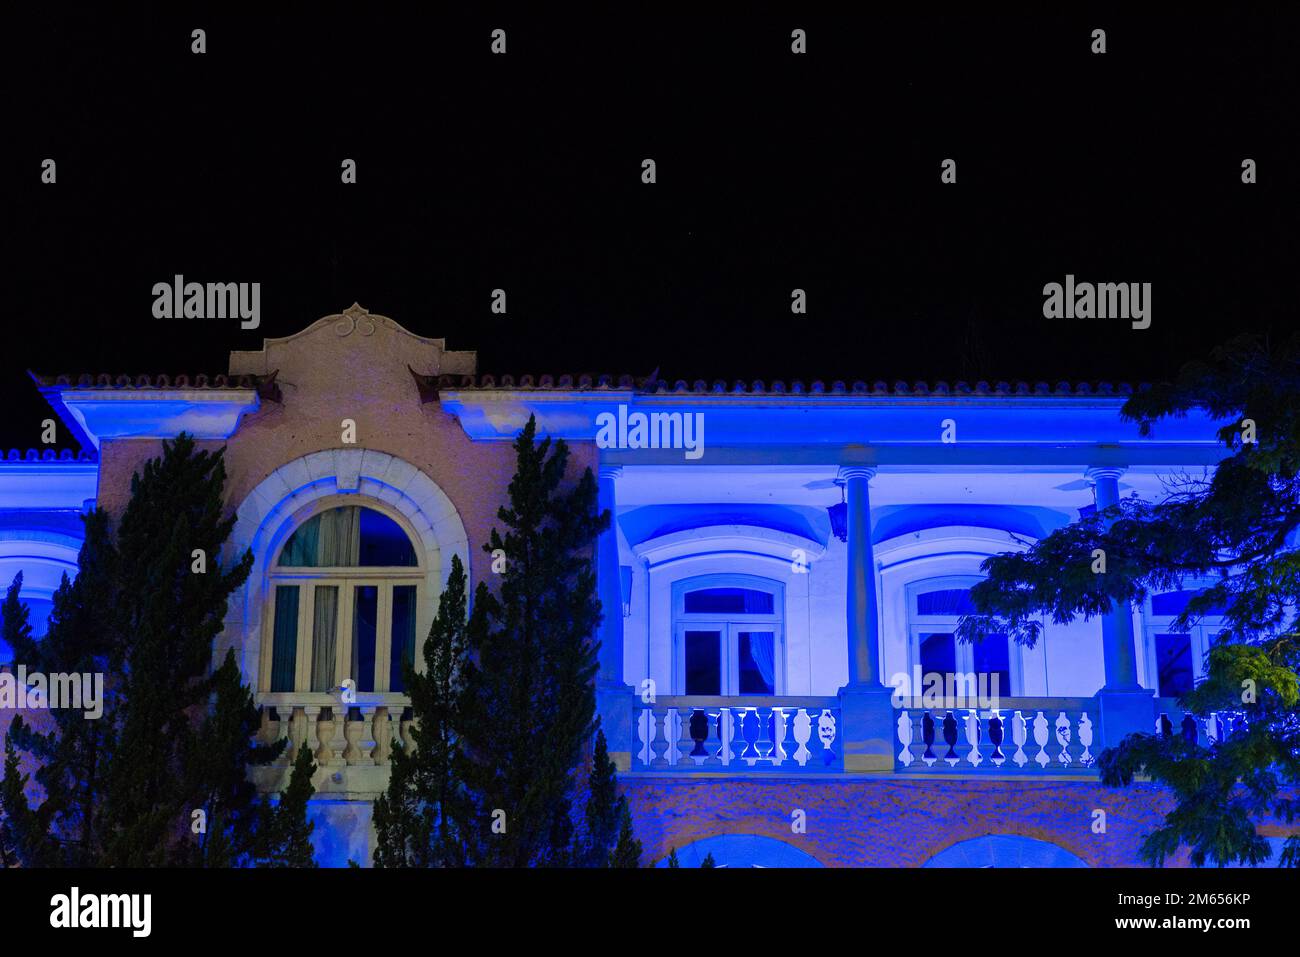 Nova Friburgo City Hall Illuminated by Blue Light at Night Stock Photo